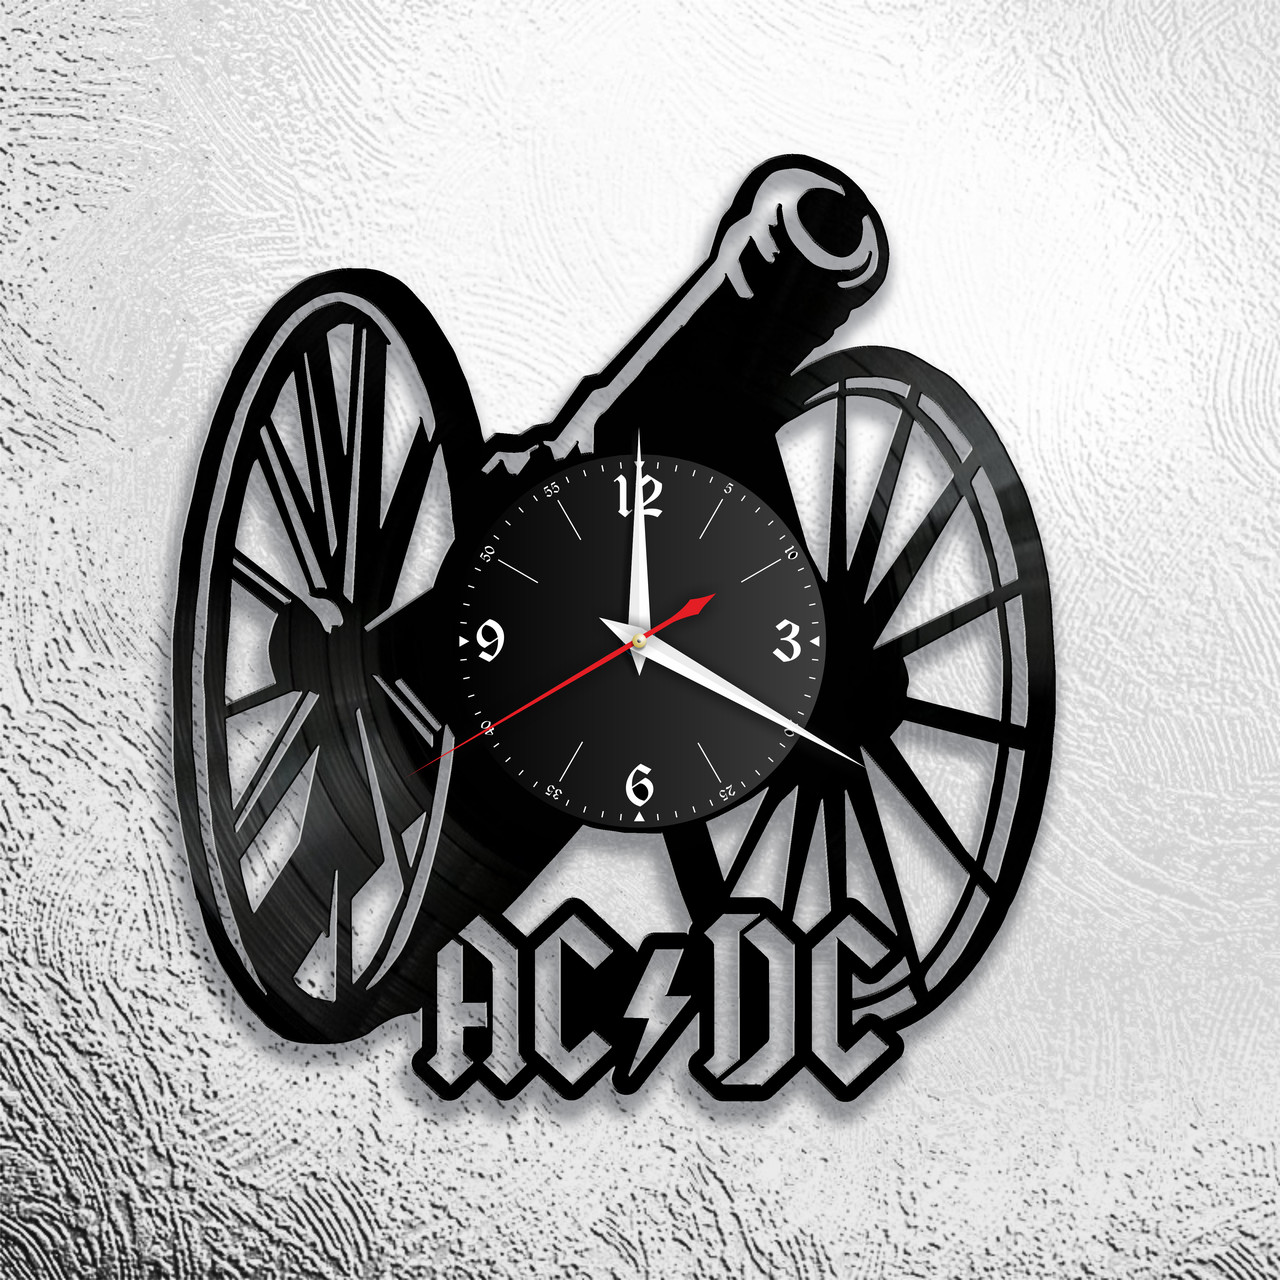 Оригинальные часы из виниловых пластинок "AC DC "версия 2, фото 1